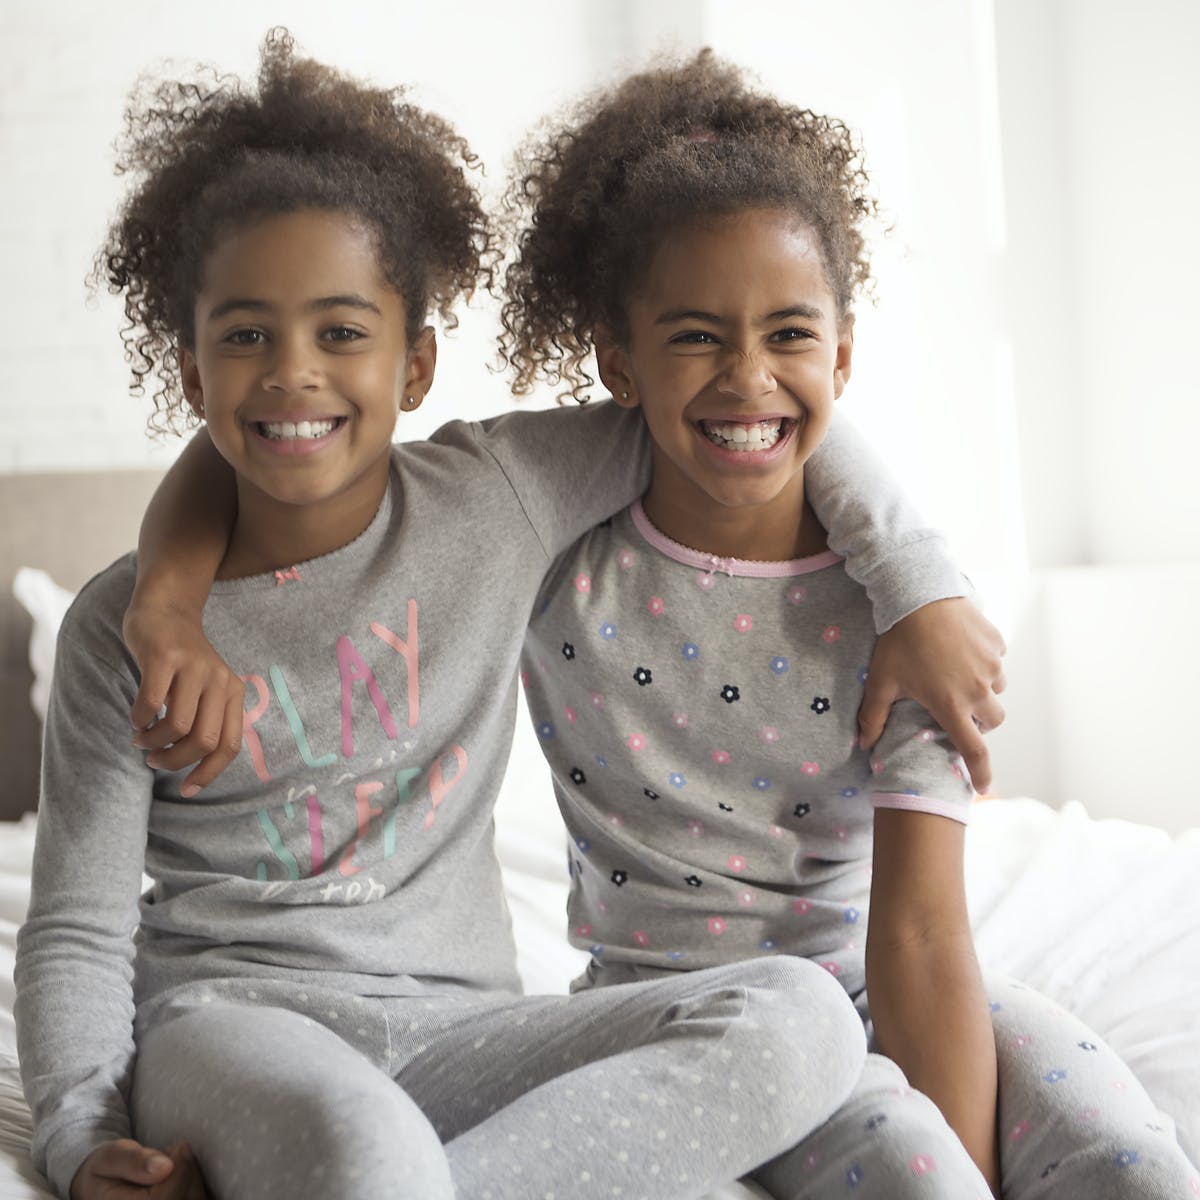 Anak Kembar Identik Ternyata Bisa Lebih Panjang Umur Dari Yang